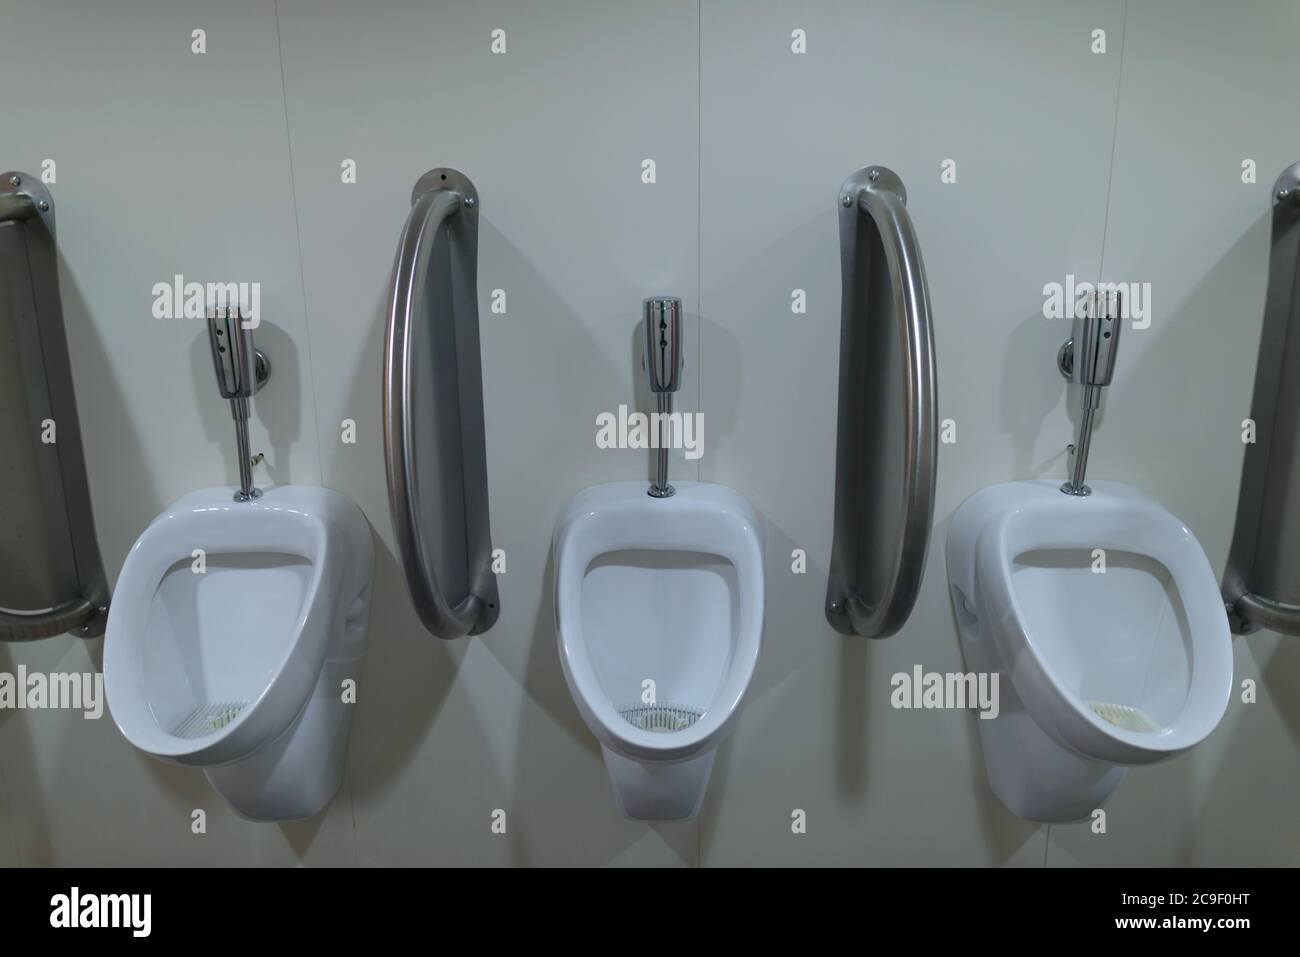 Trois urinoirs en céramique à l'intérieur des toilettes publiques pour hommes Banque D'Images